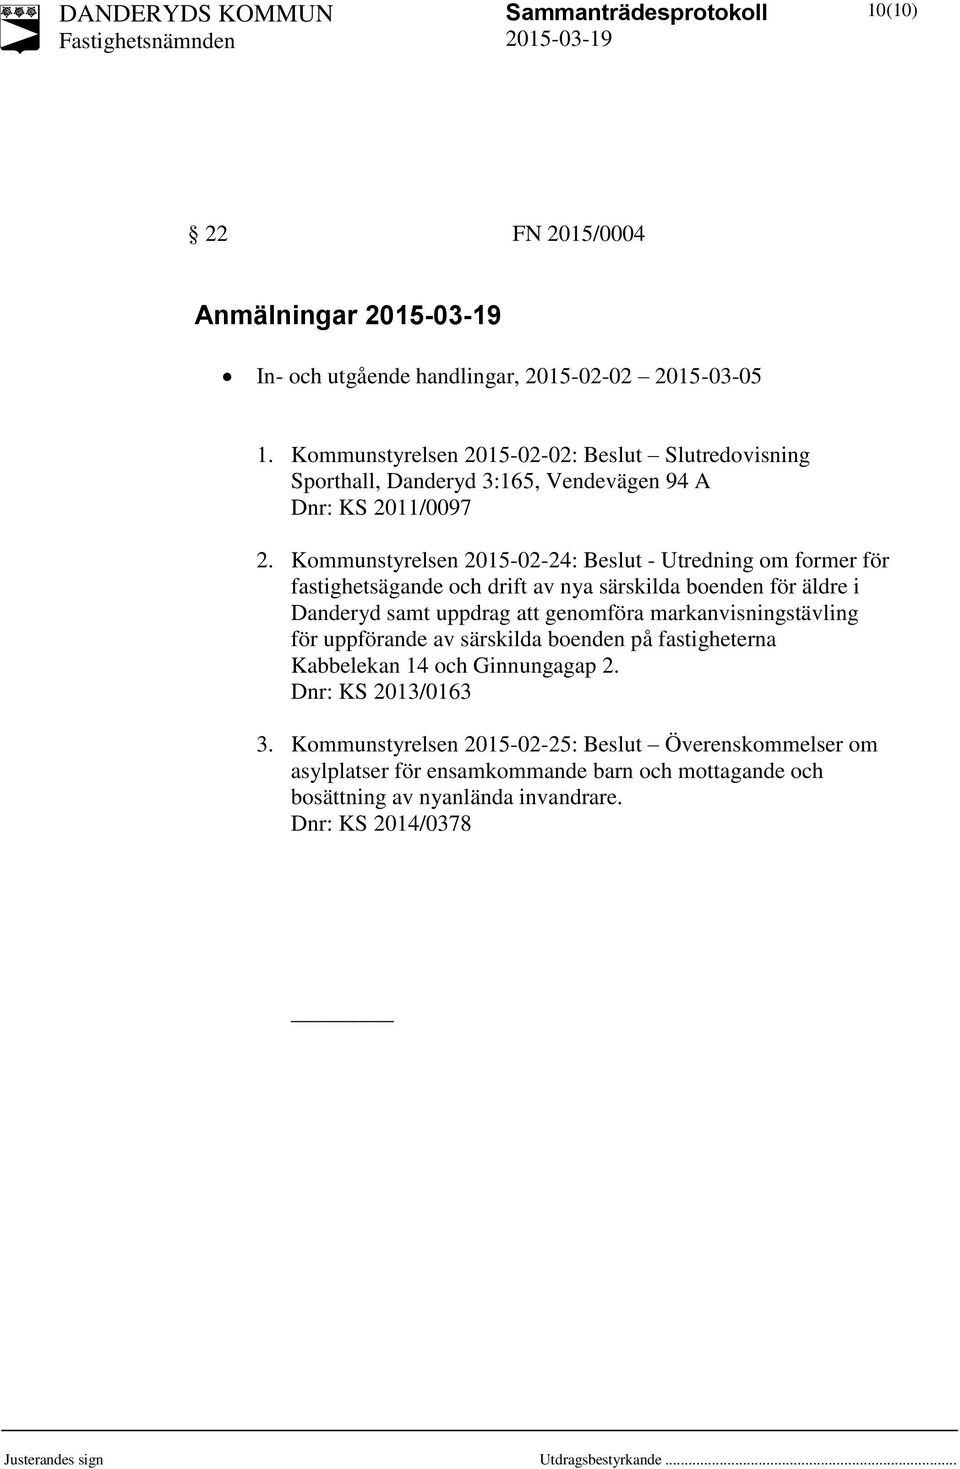 Kommunstyrelsen 2015-02-24: Beslut - Utredning om former för fastighetsägande och drift av nya särskilda boenden för äldre i Danderyd samt uppdrag att genomföra